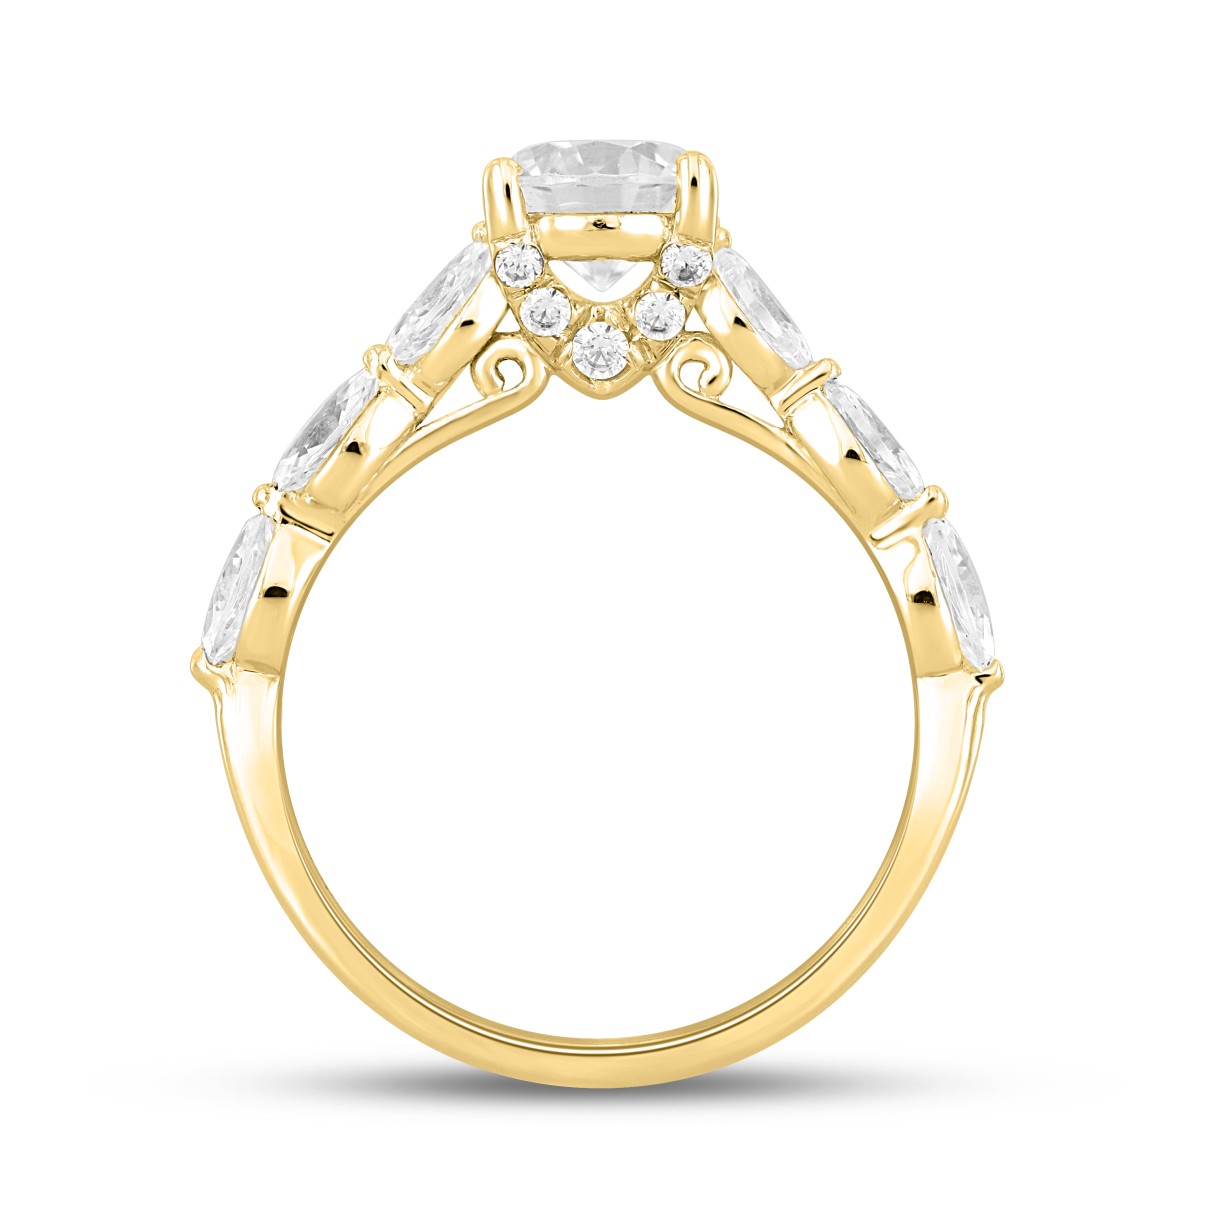 14K YELLOW GOLD 1 3/4CT ROUND/MARQUISE DIAMOND LADIES RING (CENTER STONE ROUND DIAMOND 1CT )